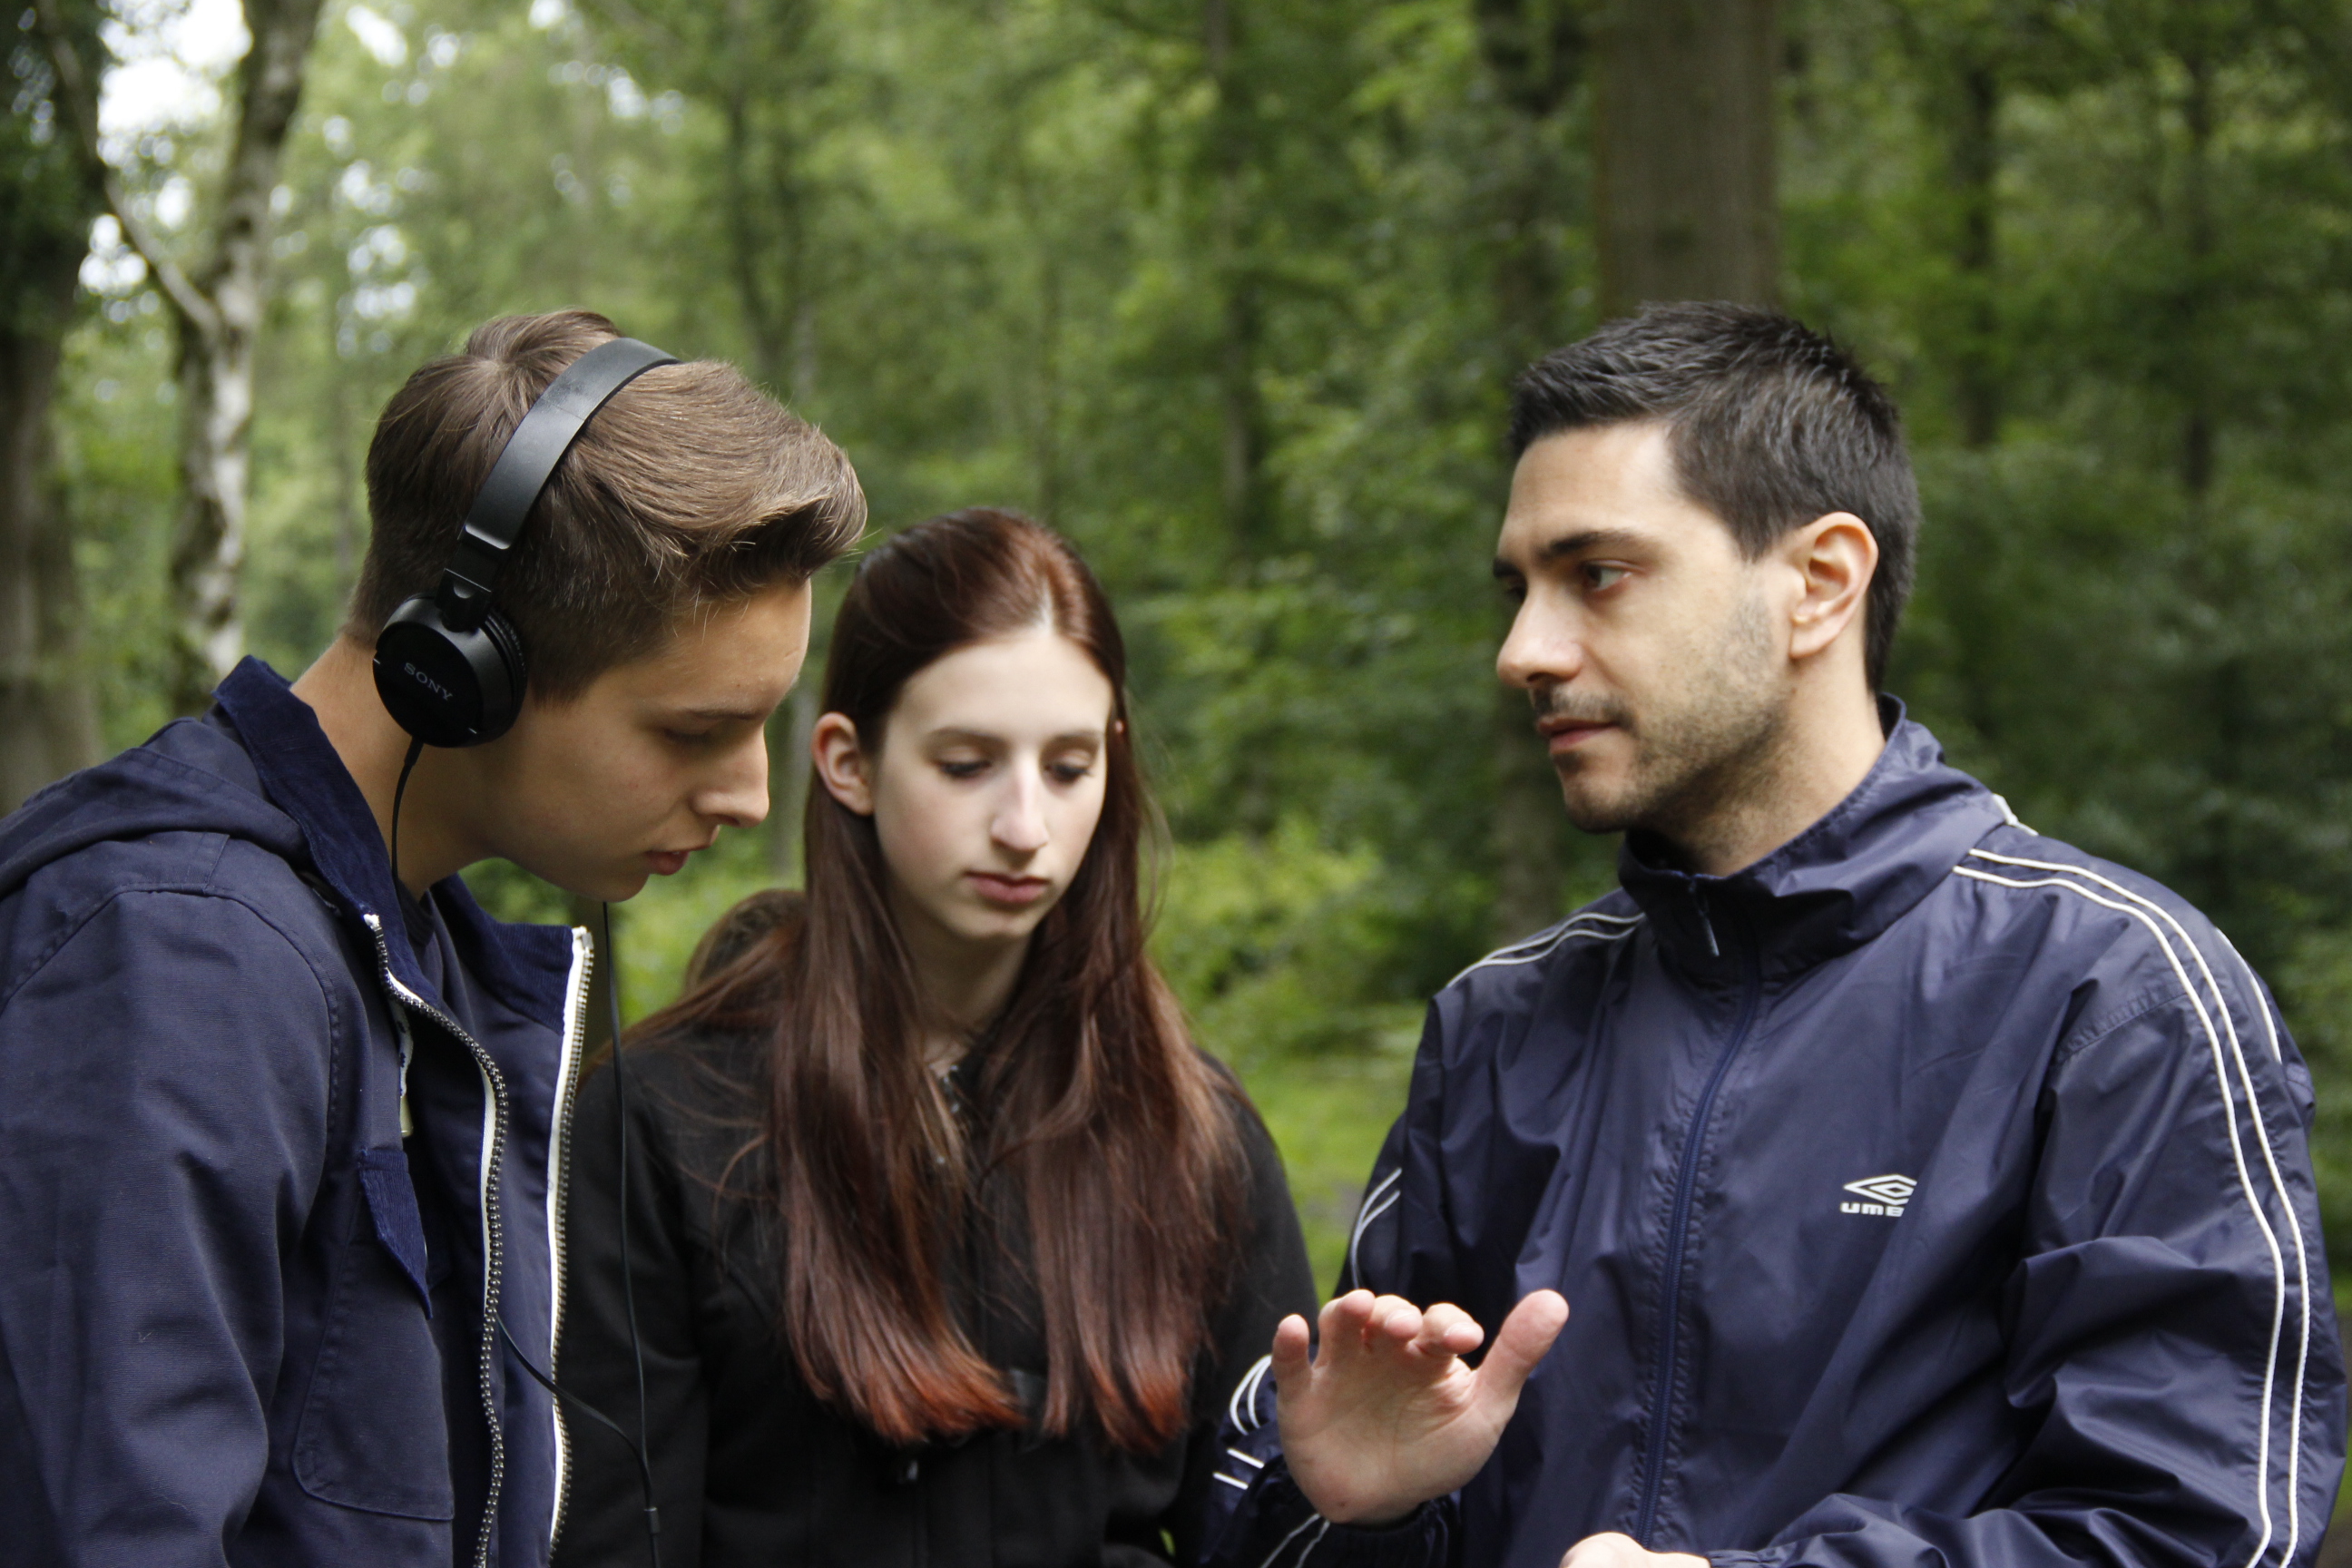 Marco Torrens directing on set in Sherrardspark Woods, Hertfordshire